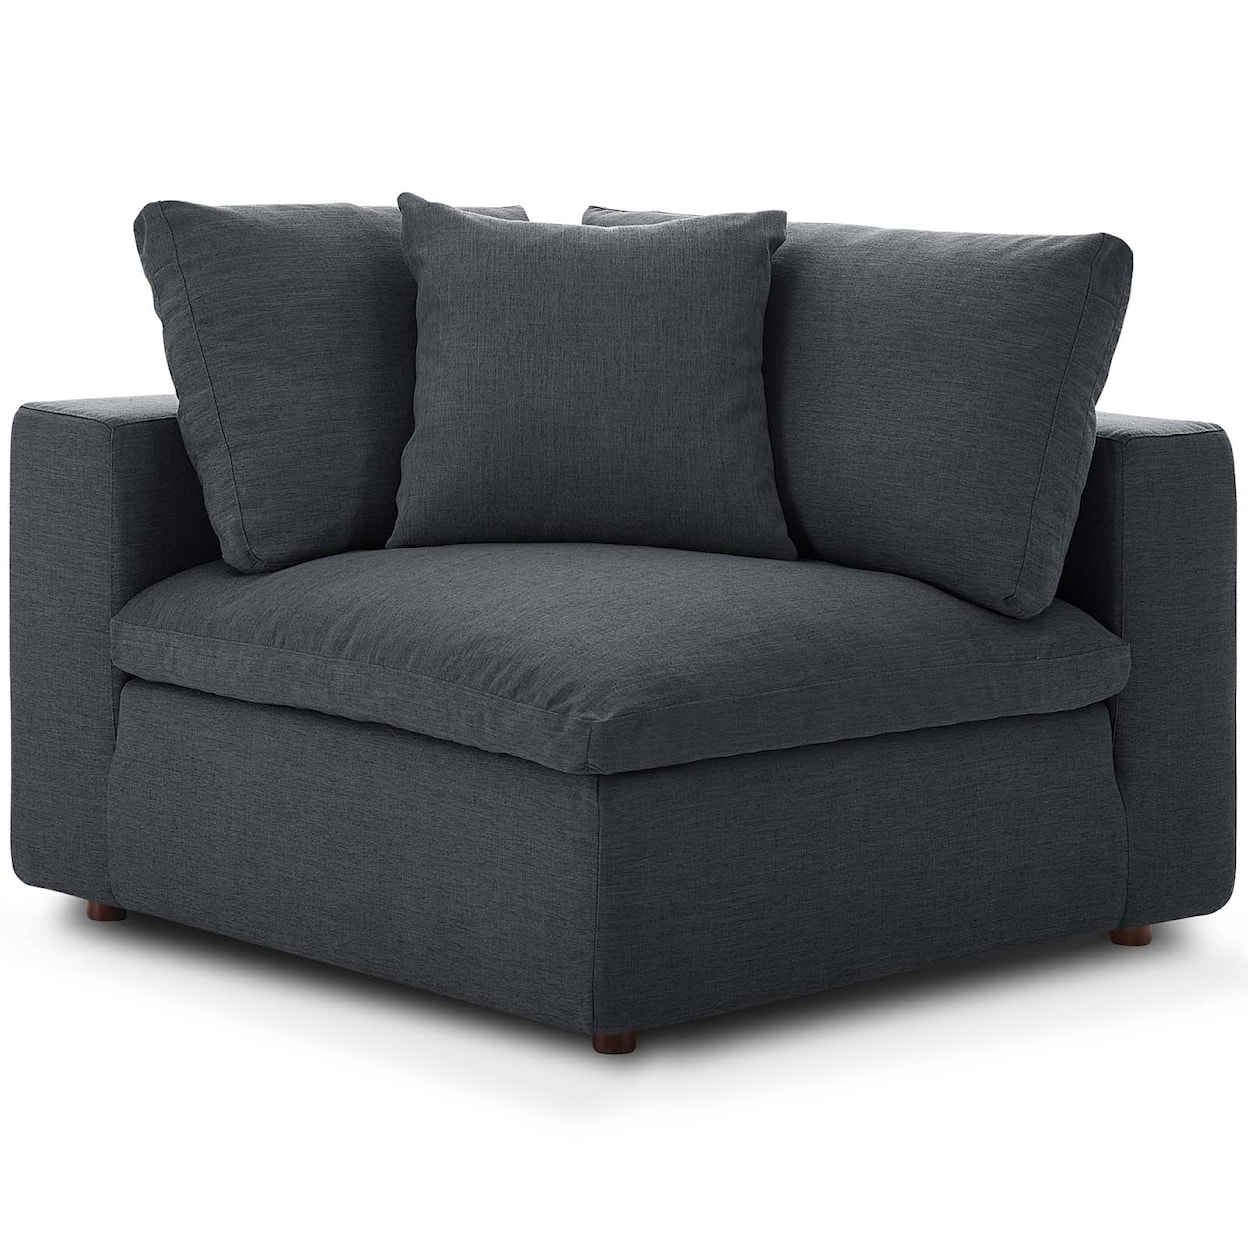 Modway Commix 2 Piece Sectional Sofa Set